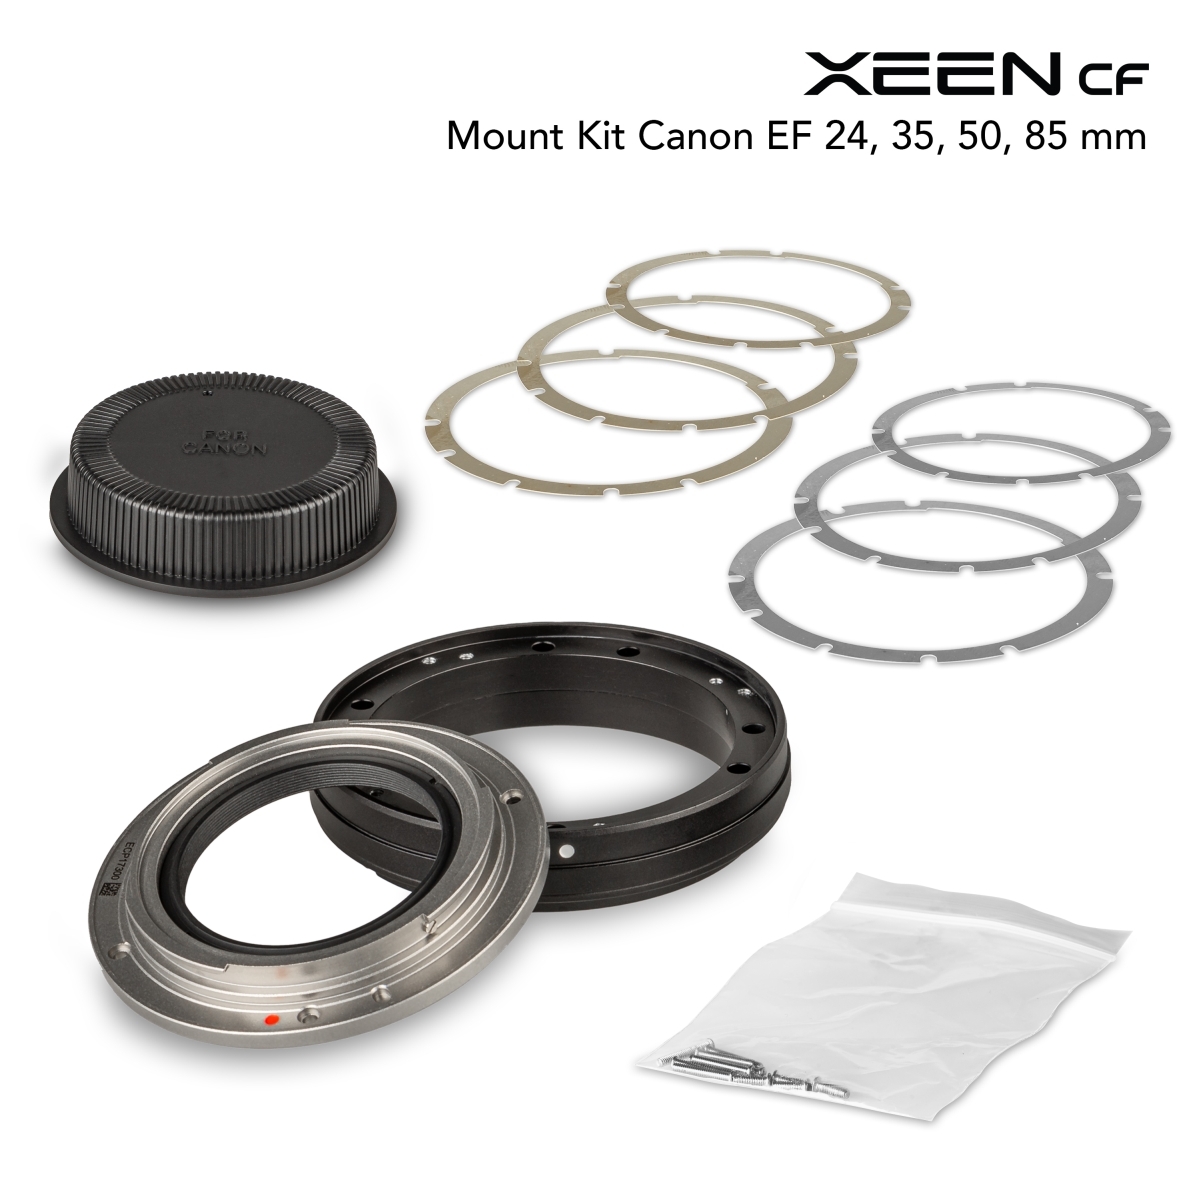 XEEN CF Mount Kit Canon EF 24, 35, 50, 85 mm